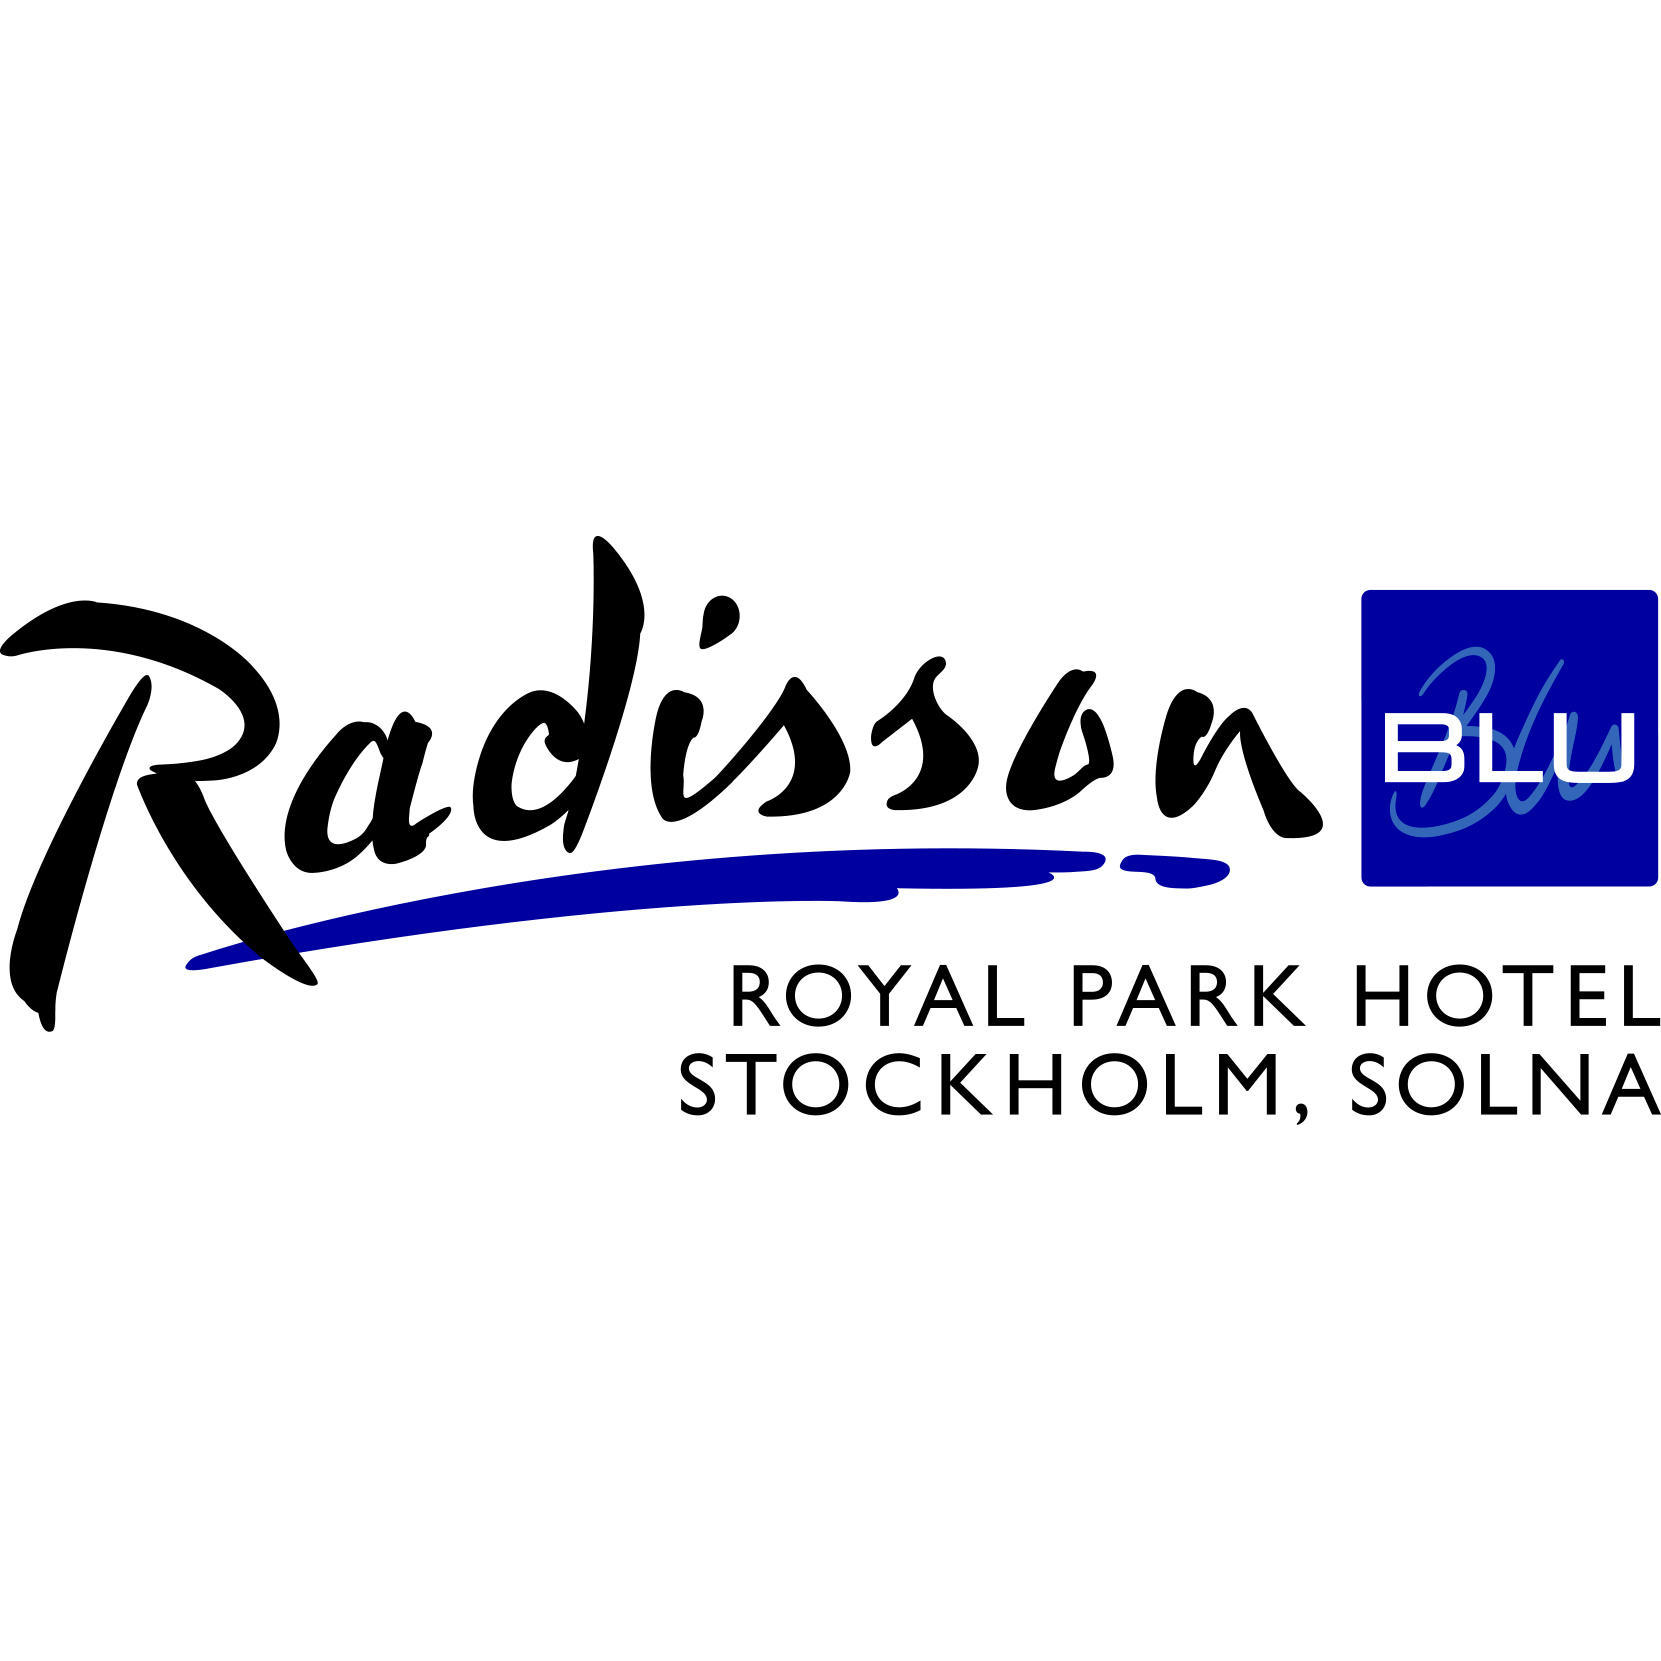 Radisson Blu Royal Park Hotel, Stockholm, Solna Logo